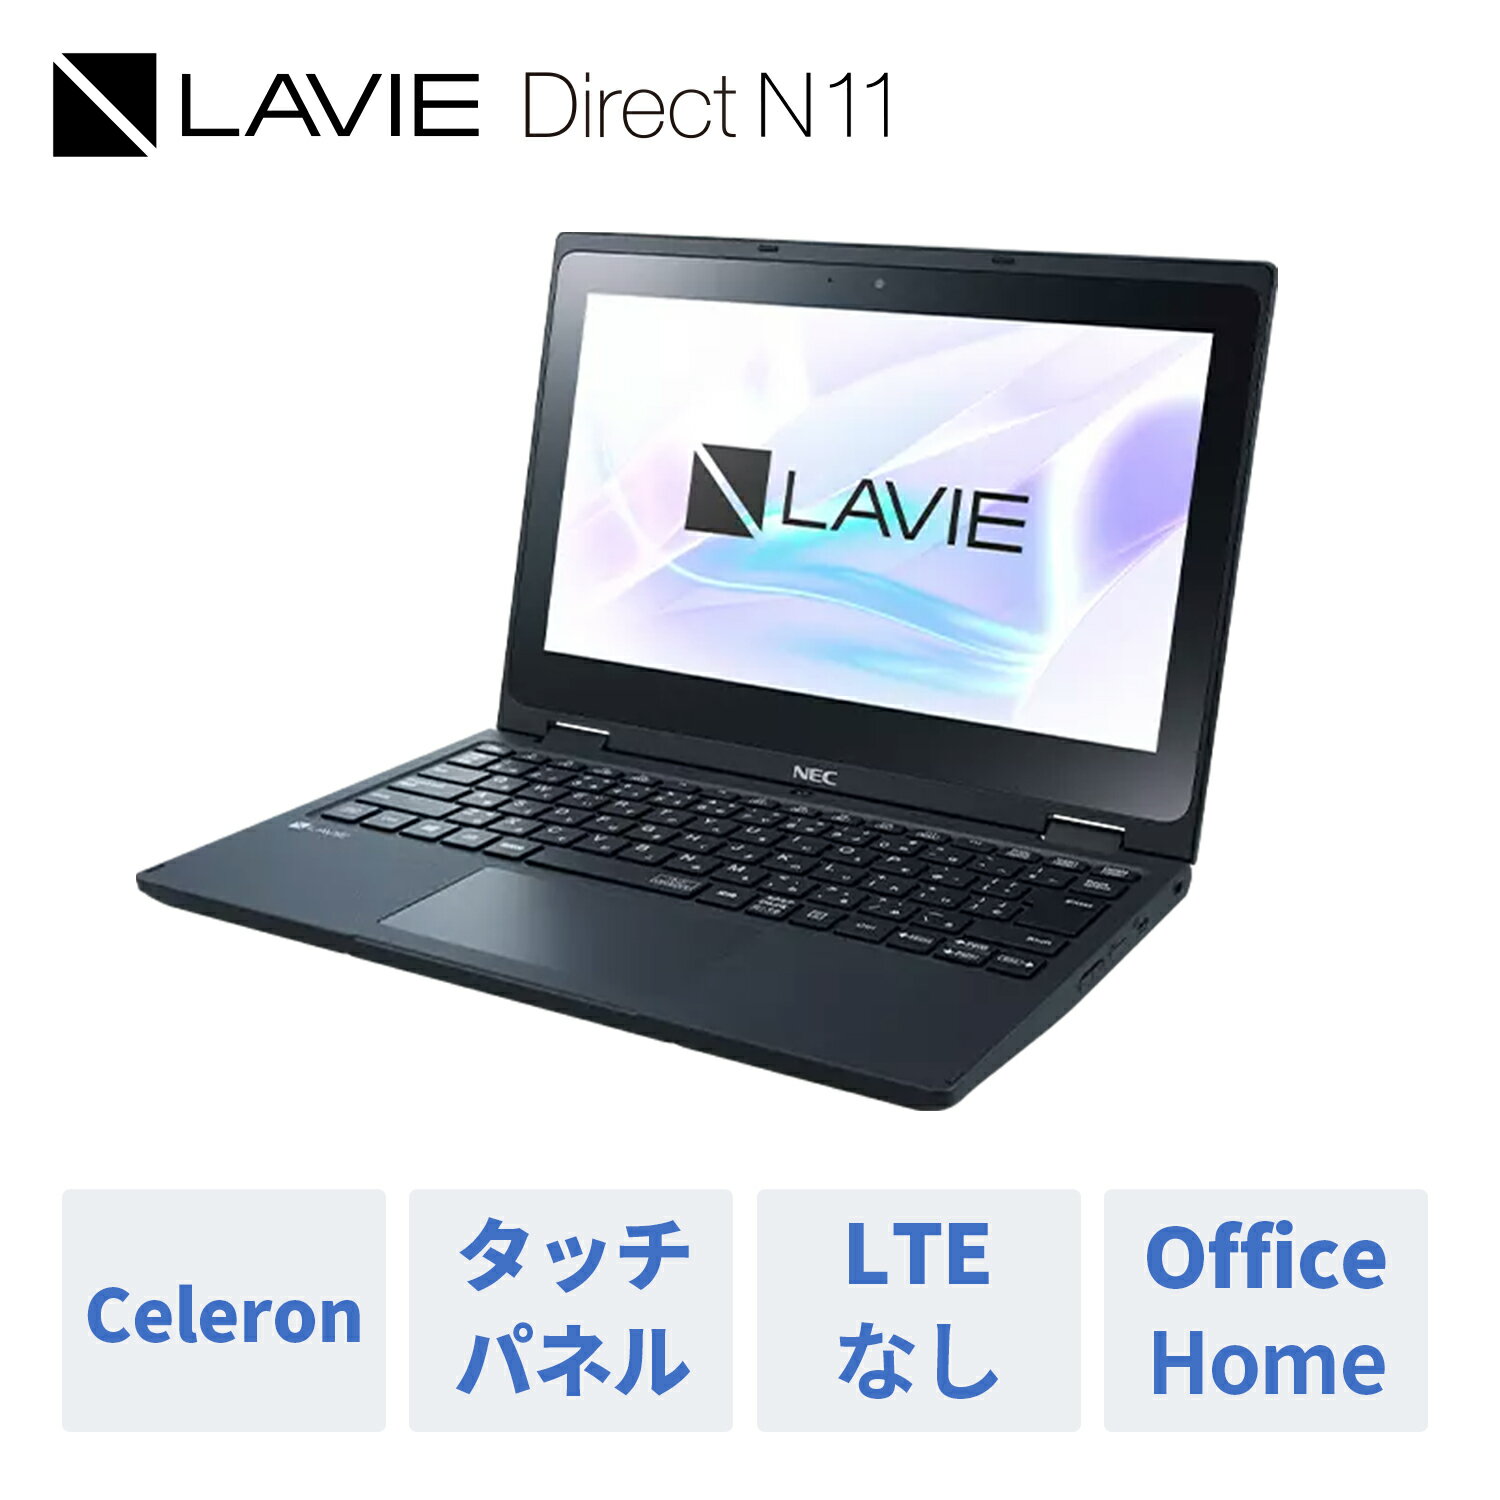 【2,000円OFFクーポン】【WEB限定モデル】NEC ノートパソコン 新品 office付き LAVIE Direct N11 11.6インチ Windows 10 Pro Celeron メモリ 4GB タッチパネル 1年保証 送料無料